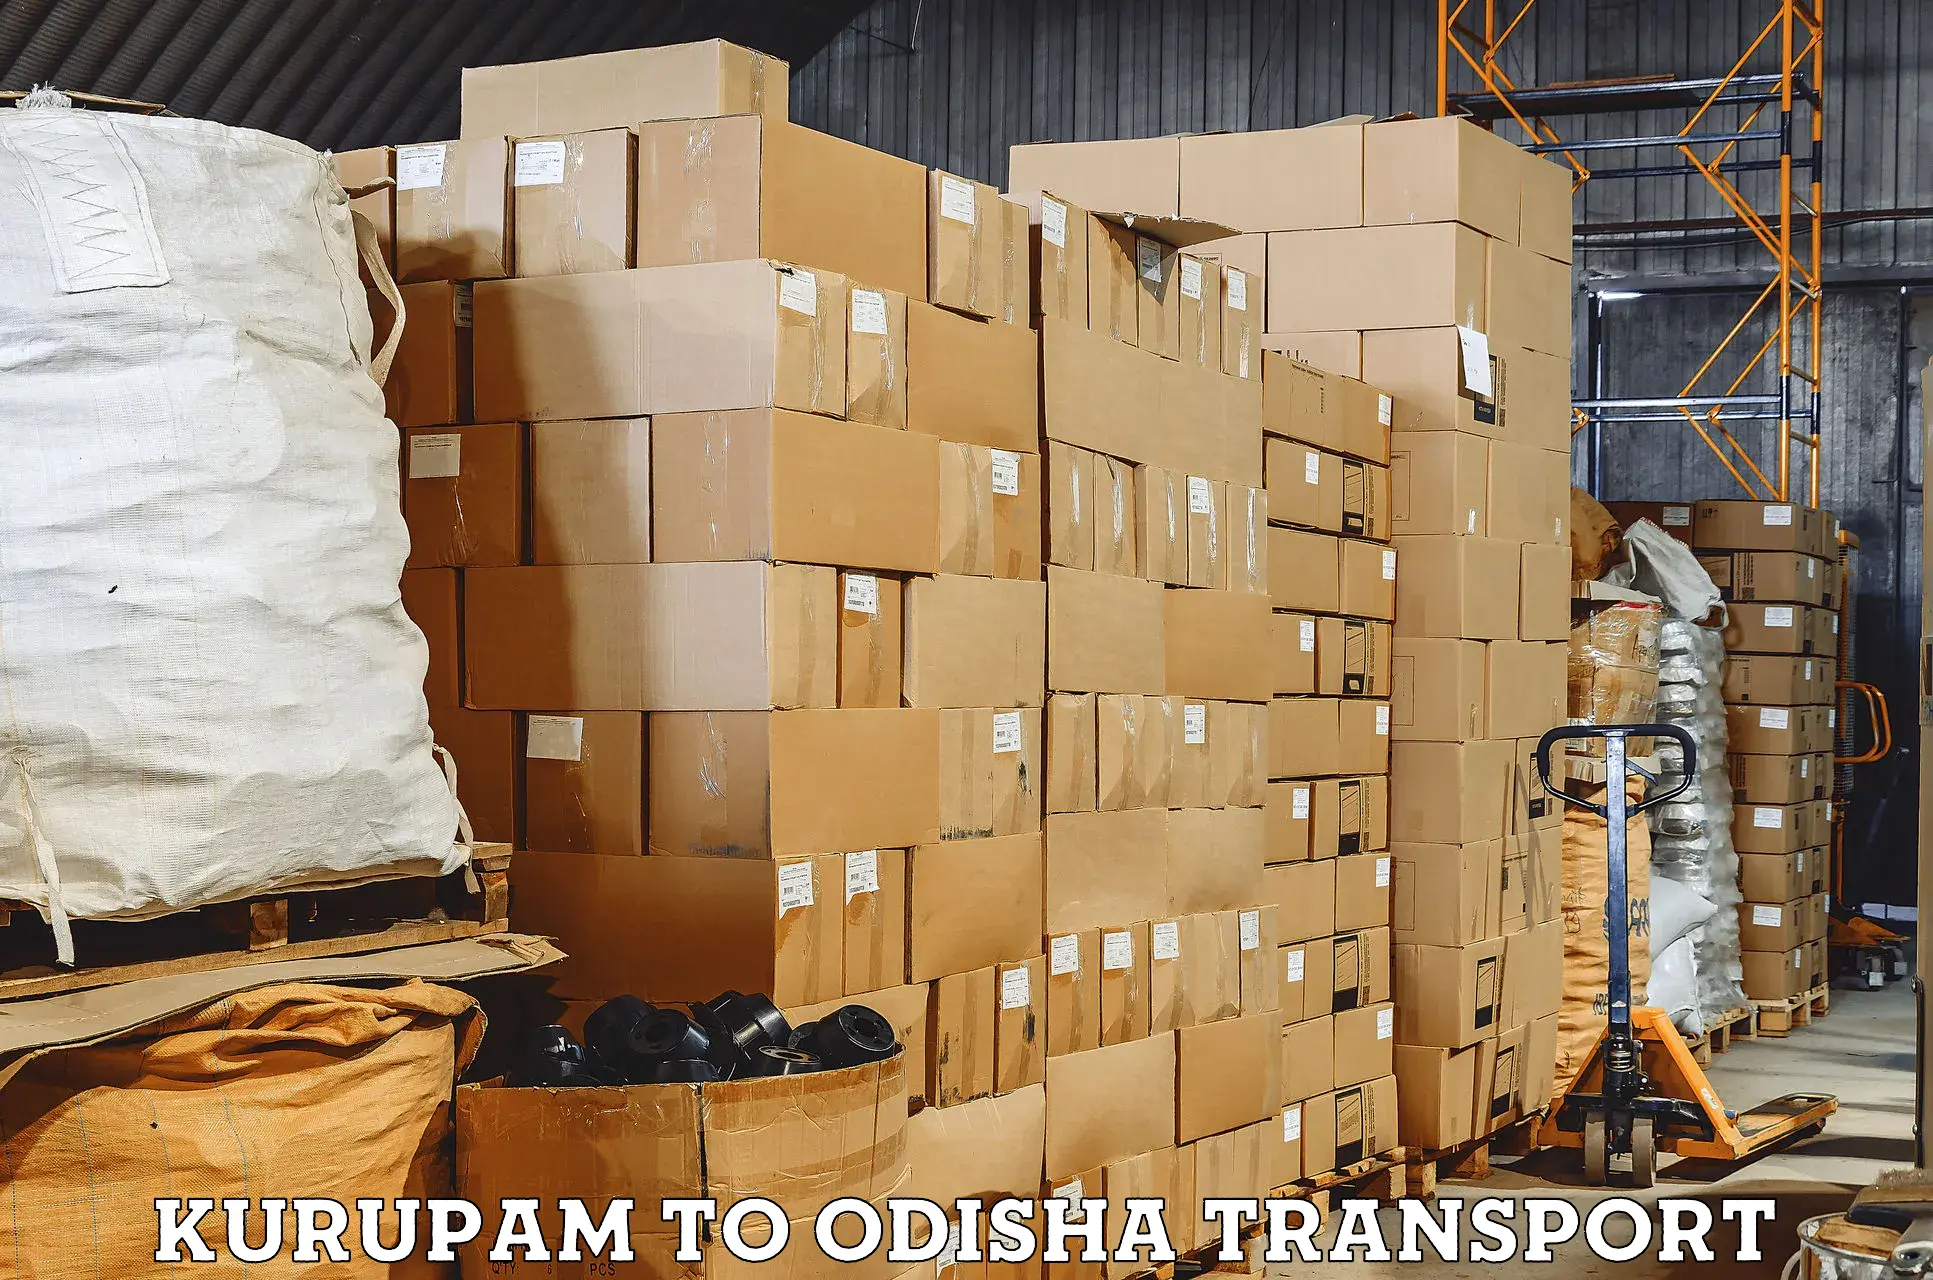 Container transport service Kurupam to Baripada